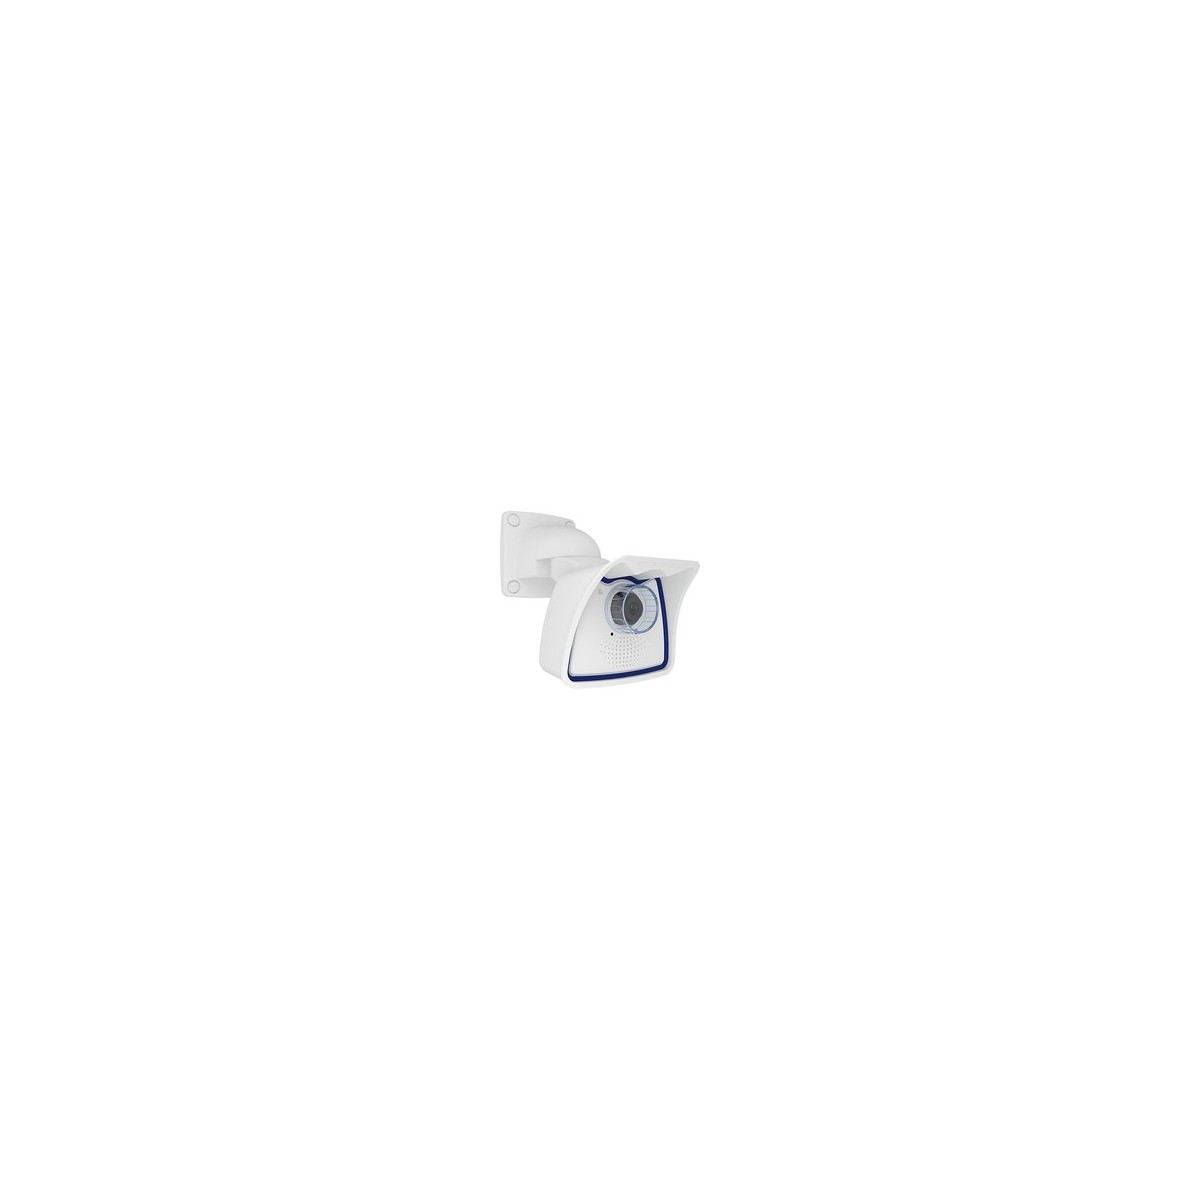 Mobotix Mx-M26B-6D041 - IP security camera - Indoor  outdoor - Wired - EN55032: 2012 EN55022: 2010 EN55024: 2010 EN50121-4: 2015